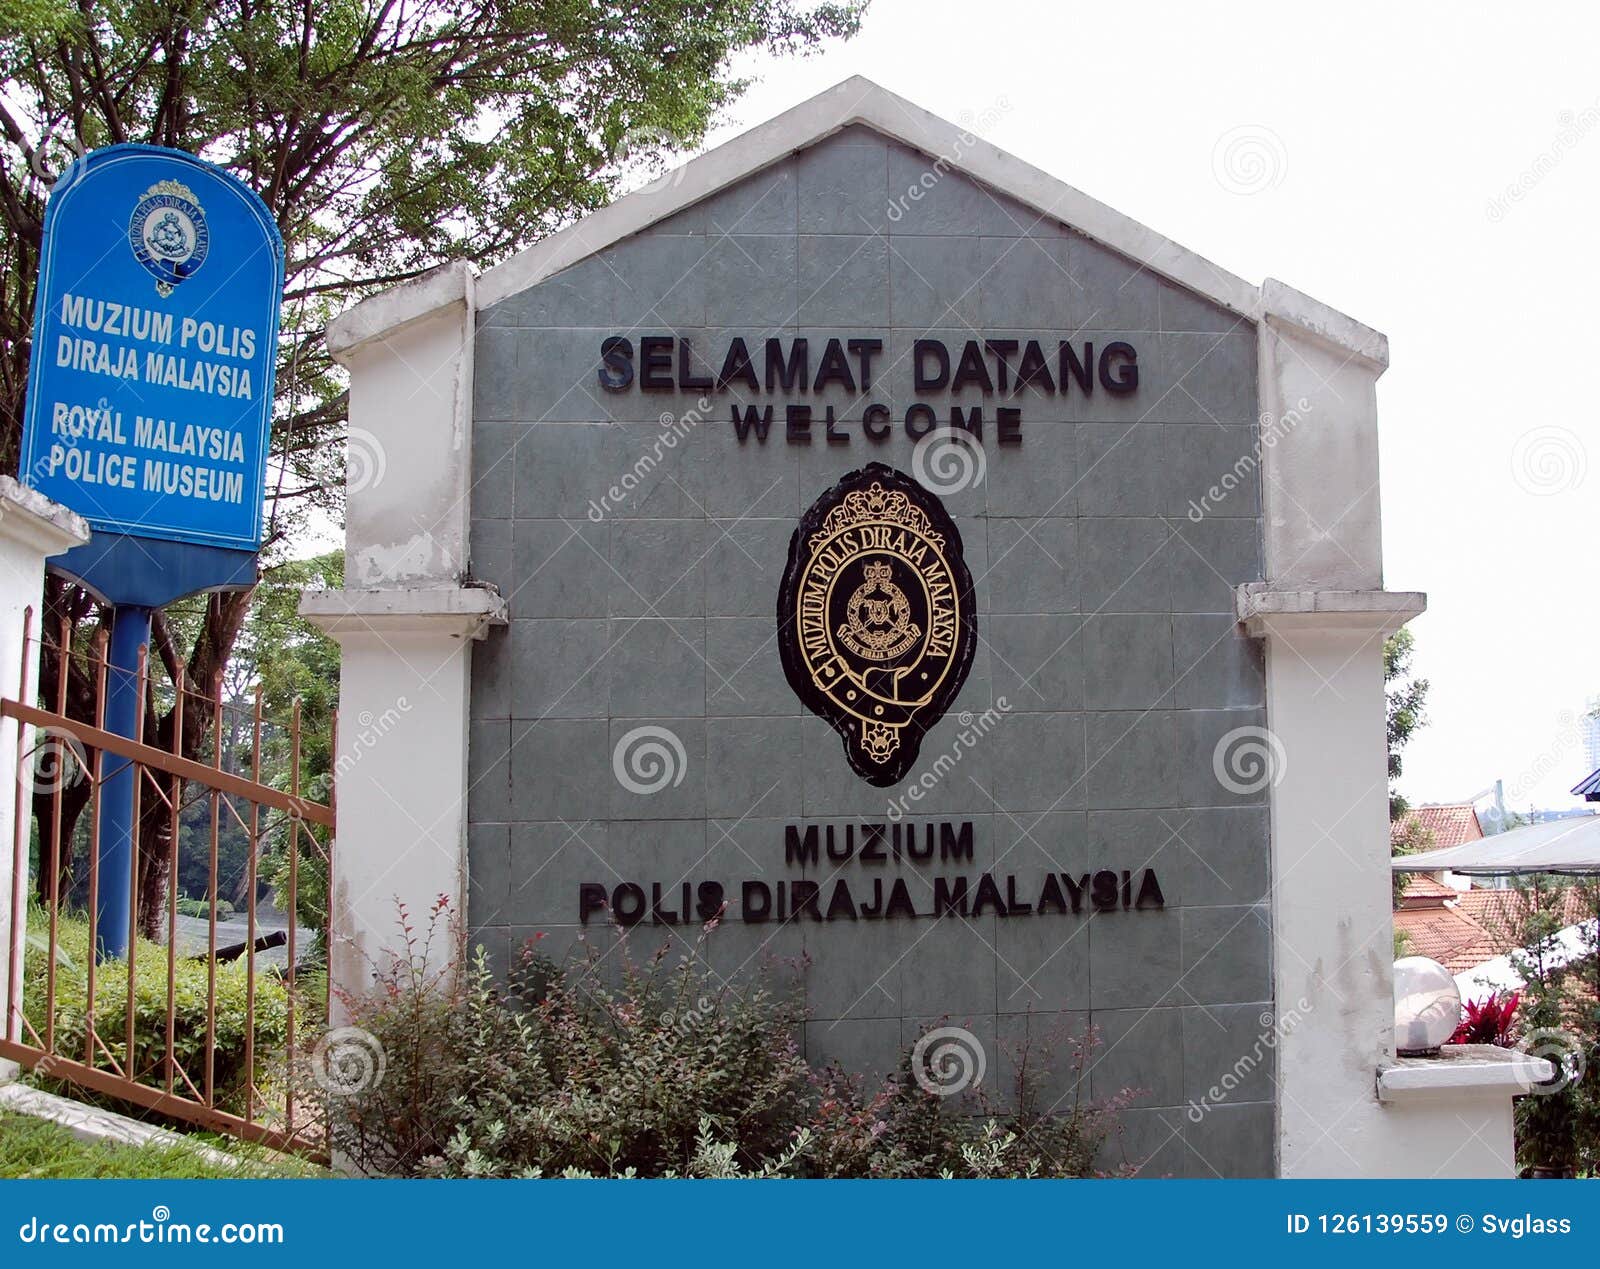 Muzium polis diraja malaysia